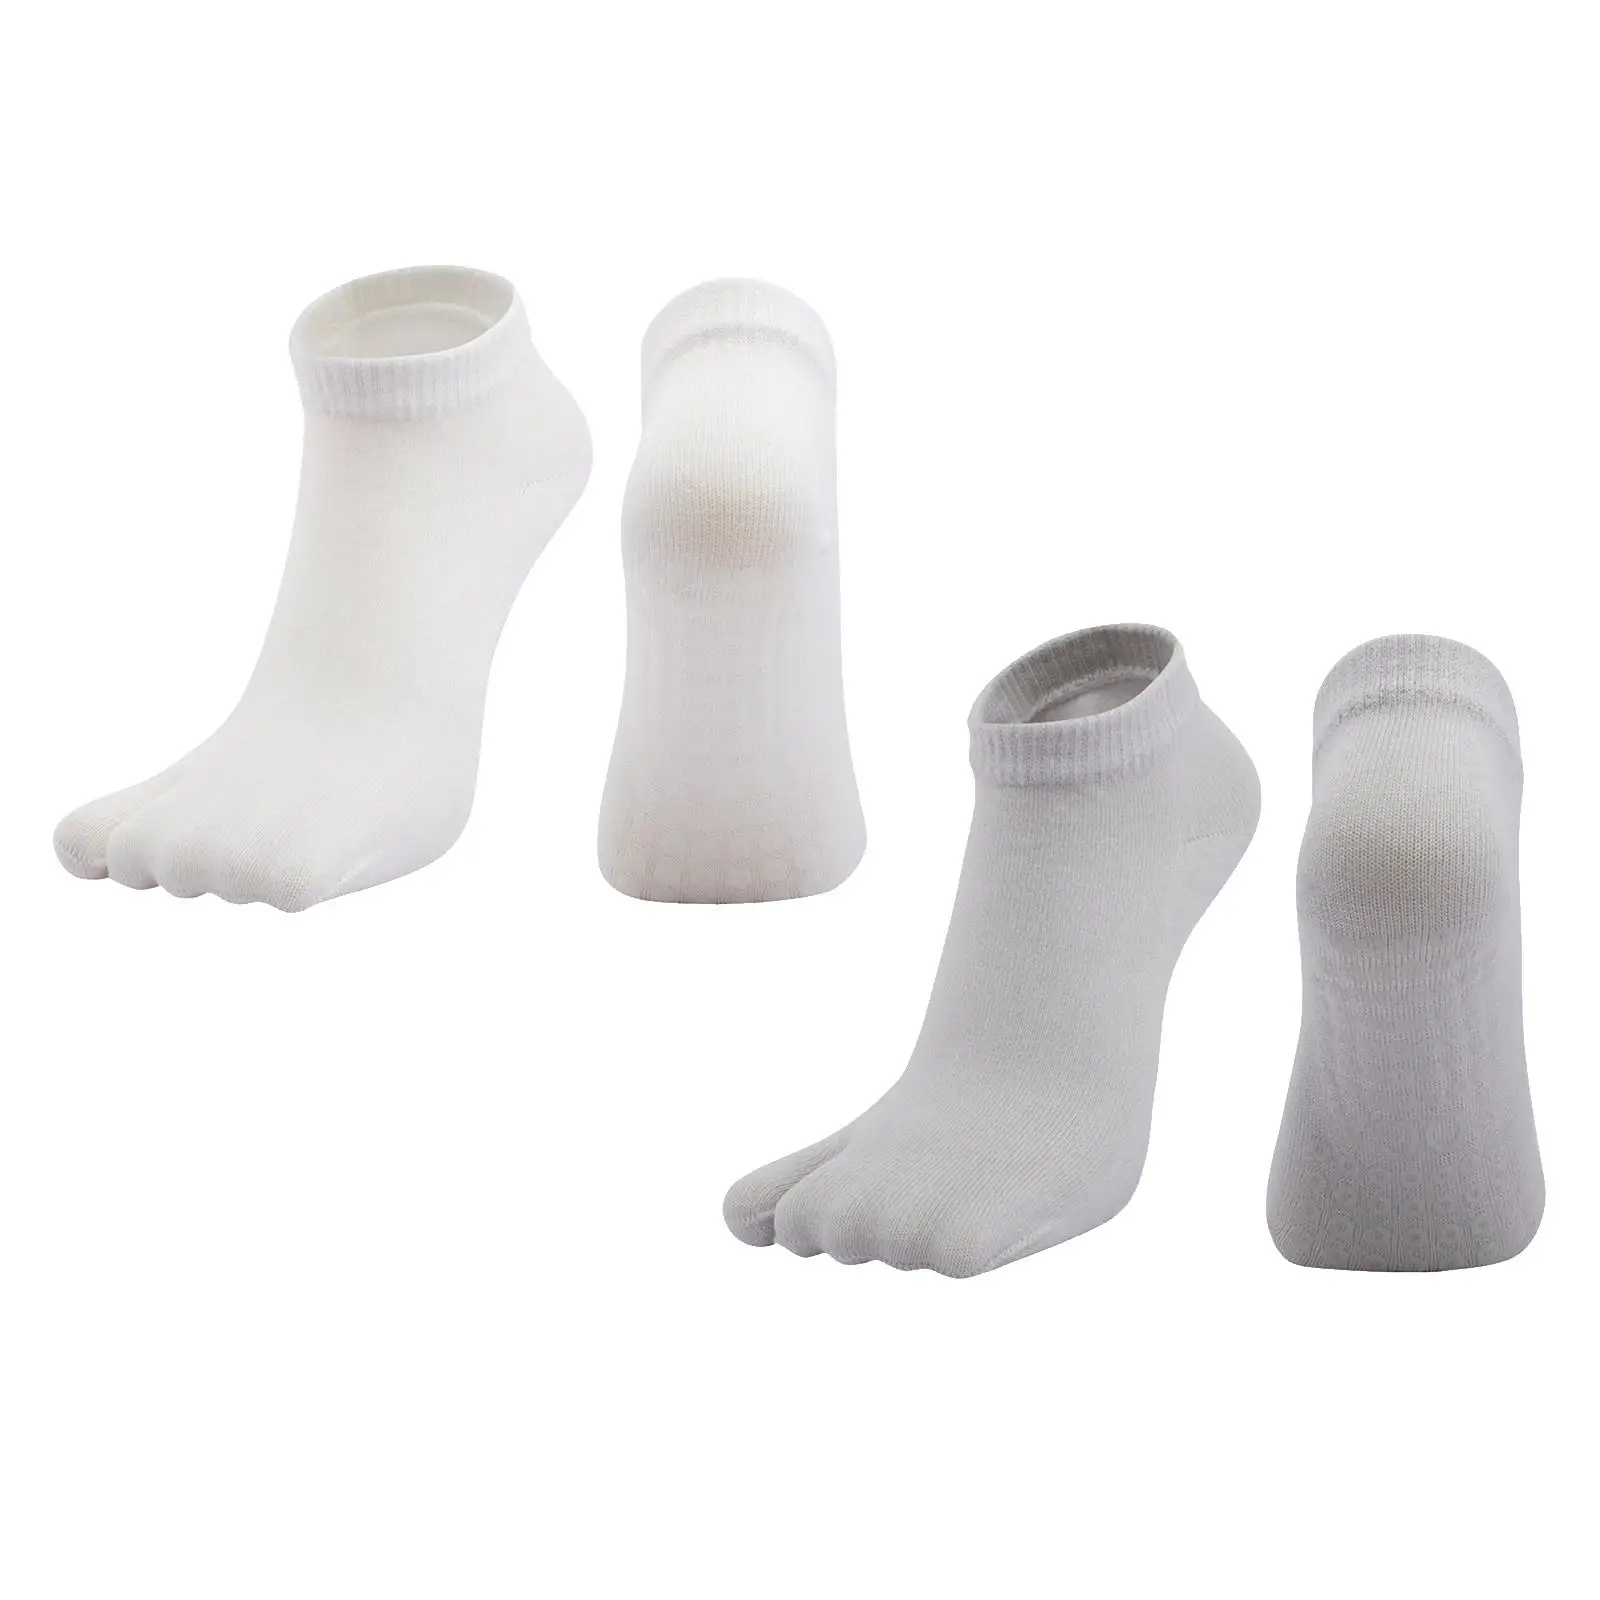 Japanese Style Flip Flop Socks Sandal Socks for Yoga Clog Socks